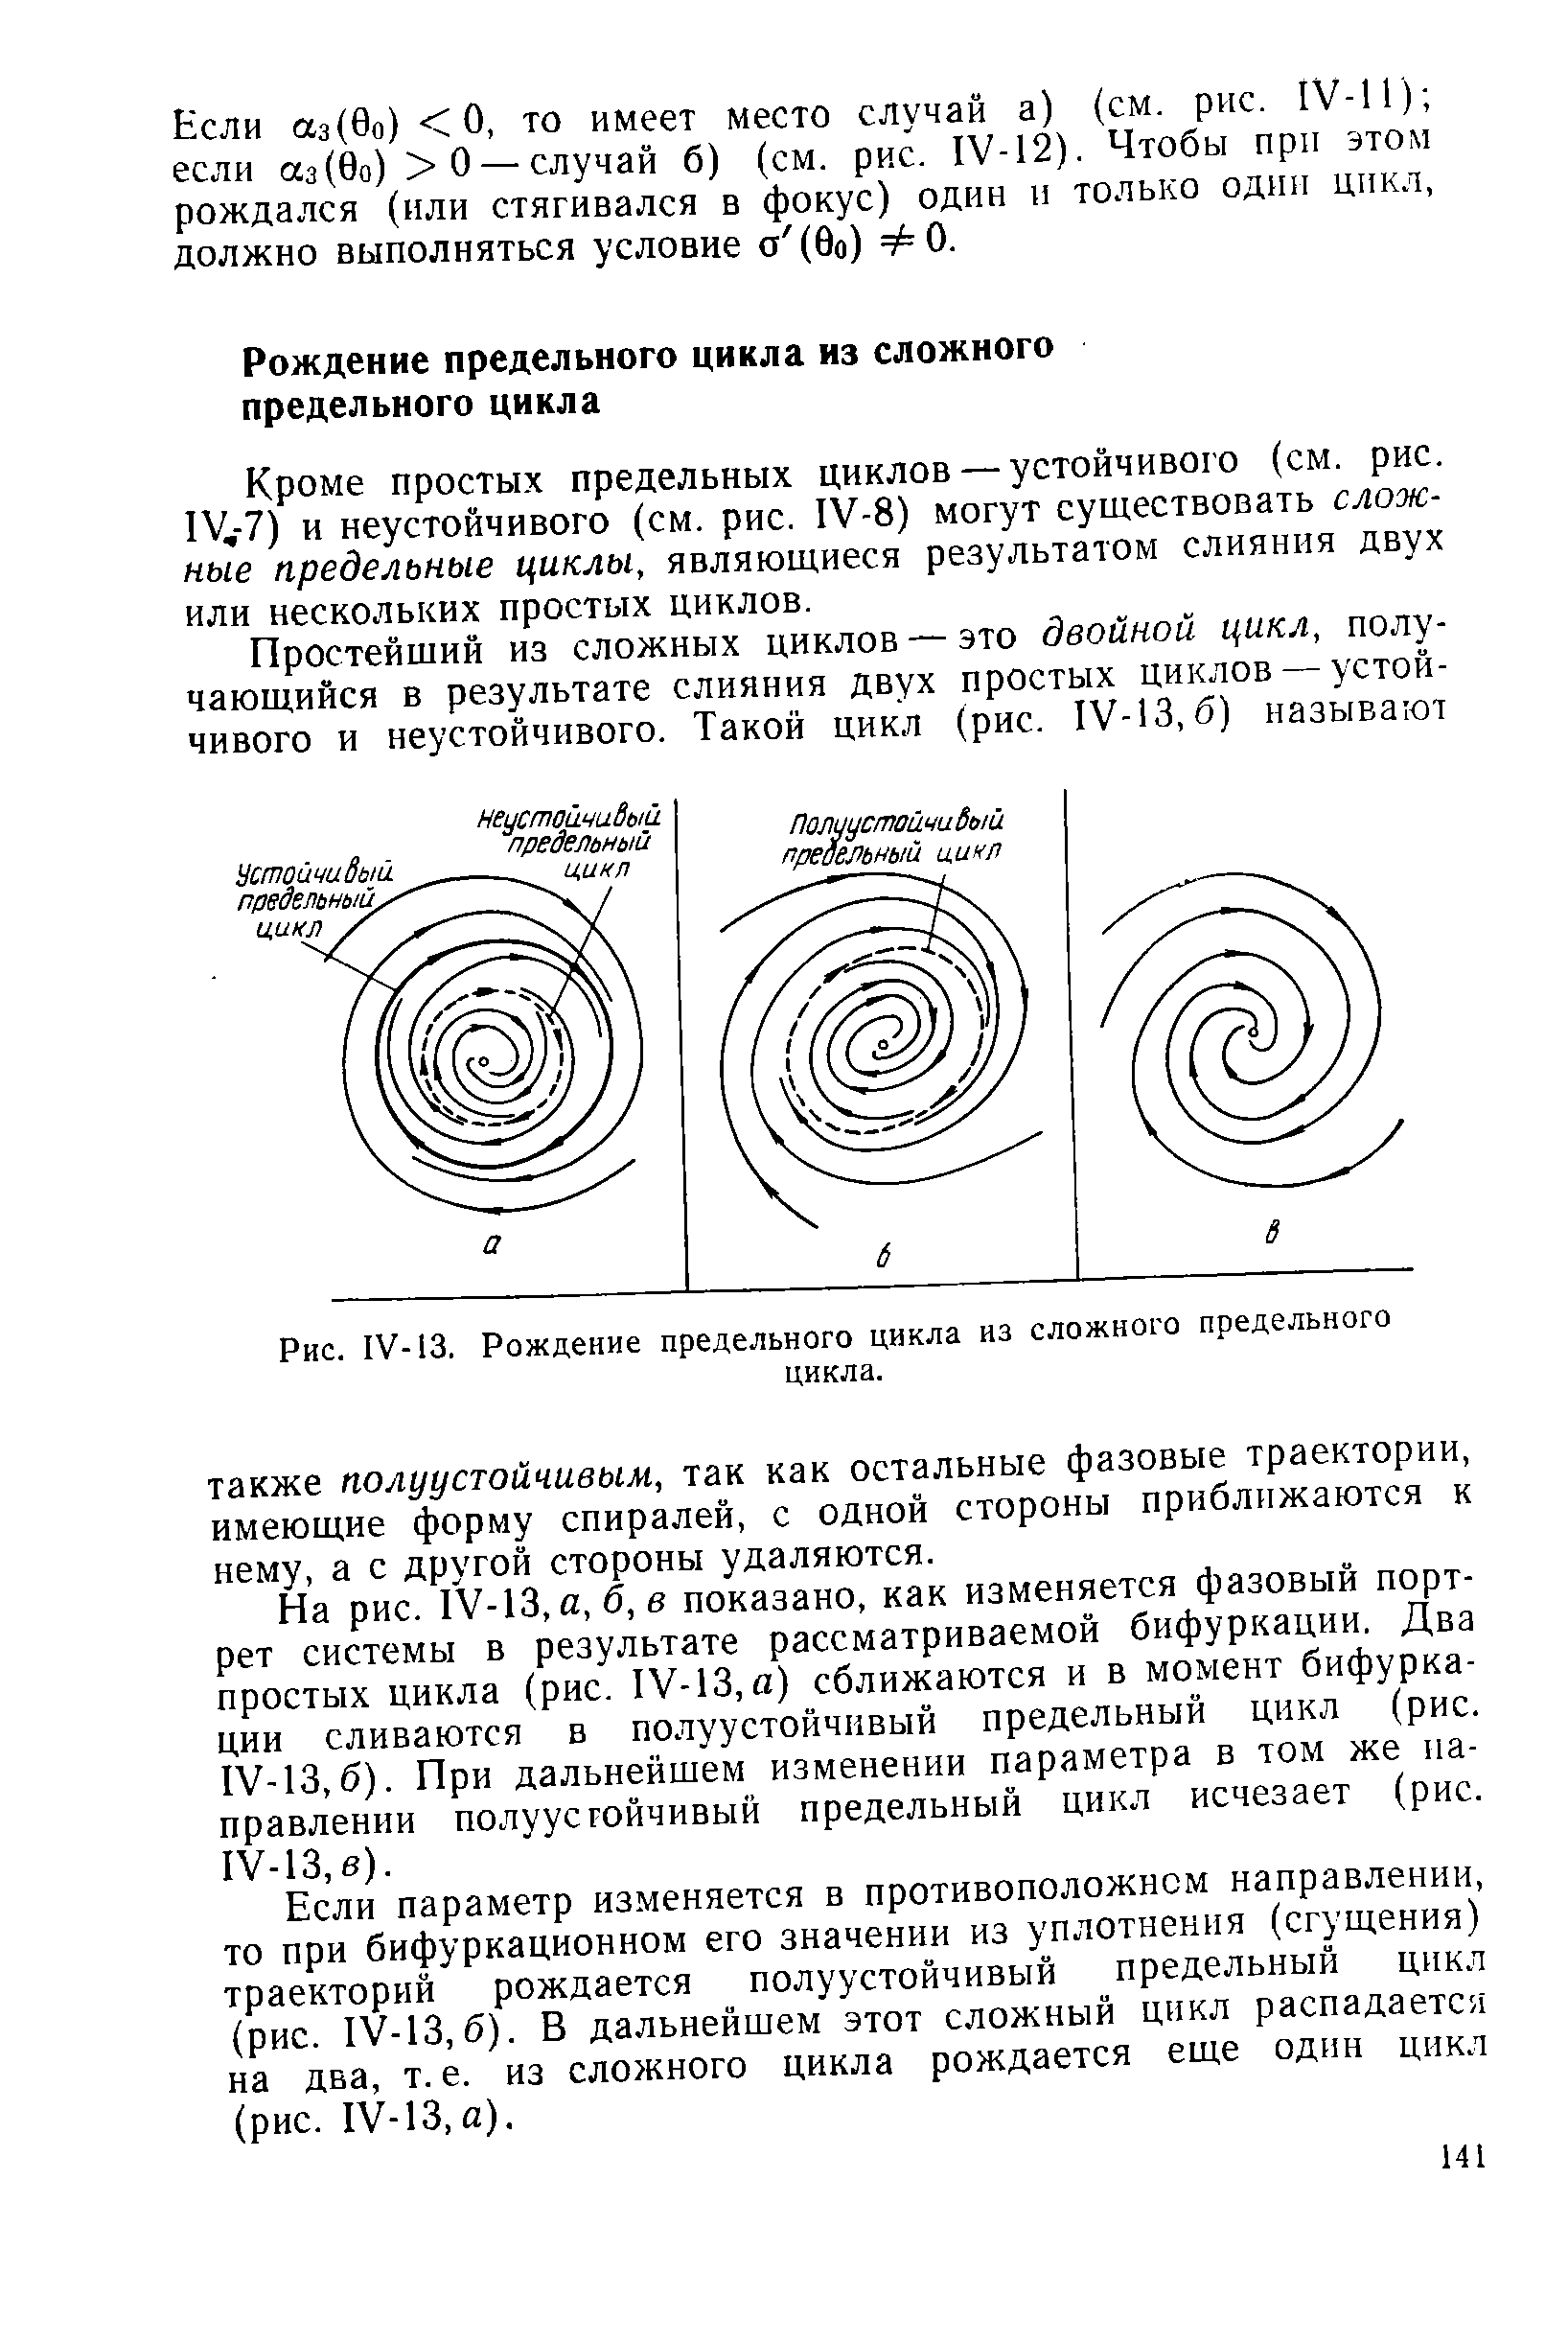 На рис. ГУ-13, й, б, в показано, как изменяется фазовый портрет системы в результате рассматриваемой бифуркации. Два простых цикла (рис. 1У-13, а) сближаются и в момент бифуркации сливаются в полуустойчивый предельный цикл (рис. 1У-13,б). При дальнейшем изменении параметра в том же направлении полуустойчивый предельный цикл исчезает (рис. 1У-13,в).